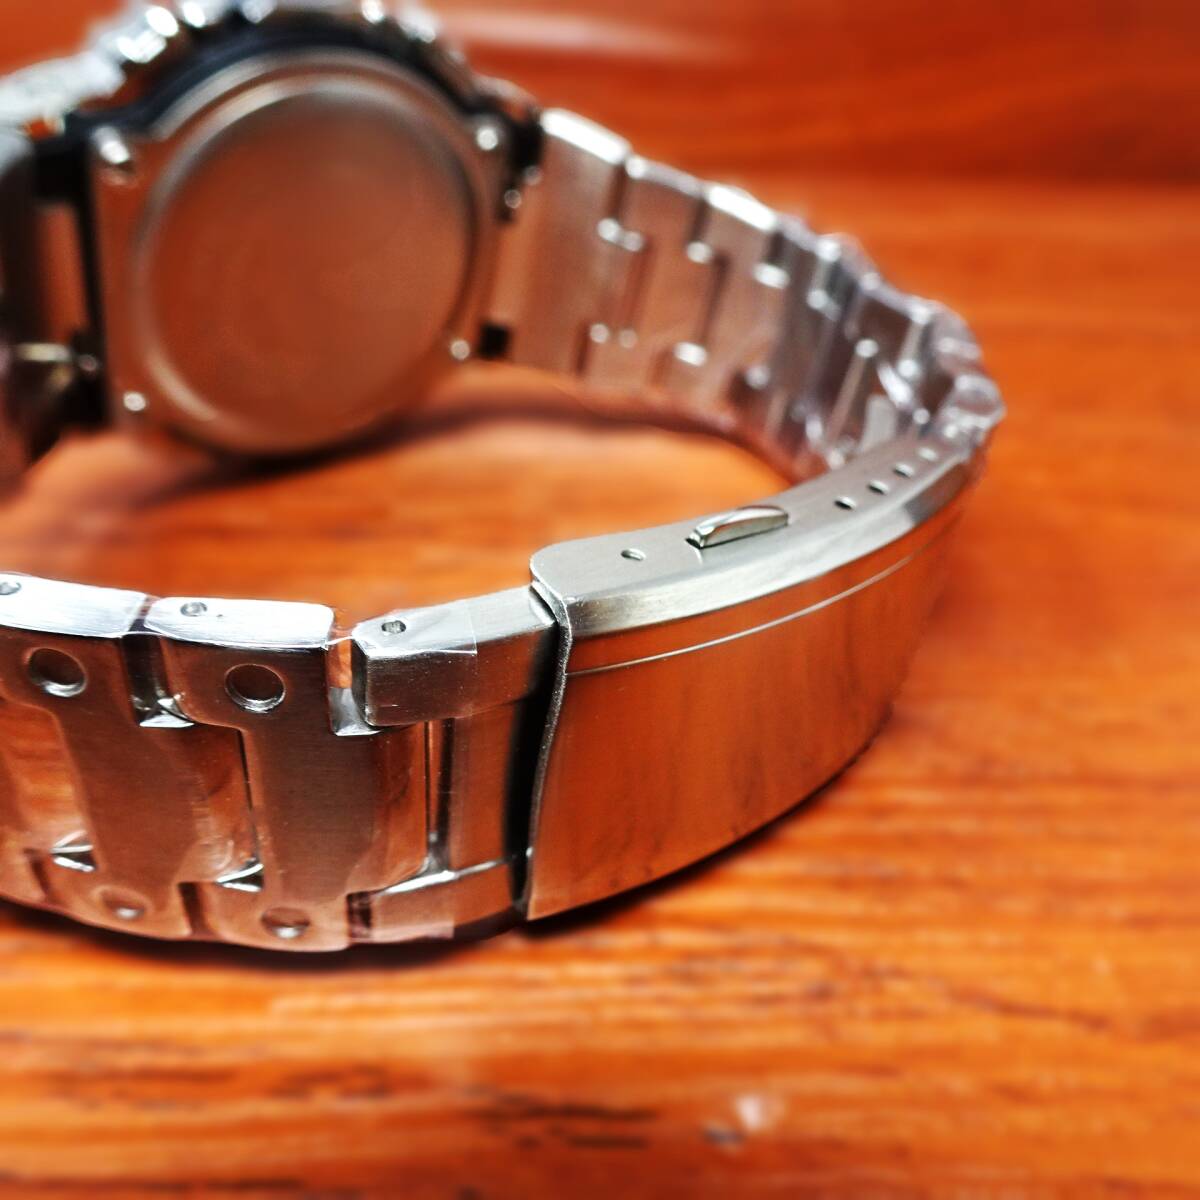 送料無料・新品・Gショックカスタム本体付き・DW5600デジタル腕時計・フルステンレス製シルバーベゼル＆ベルト・フルメタルモデル の画像4